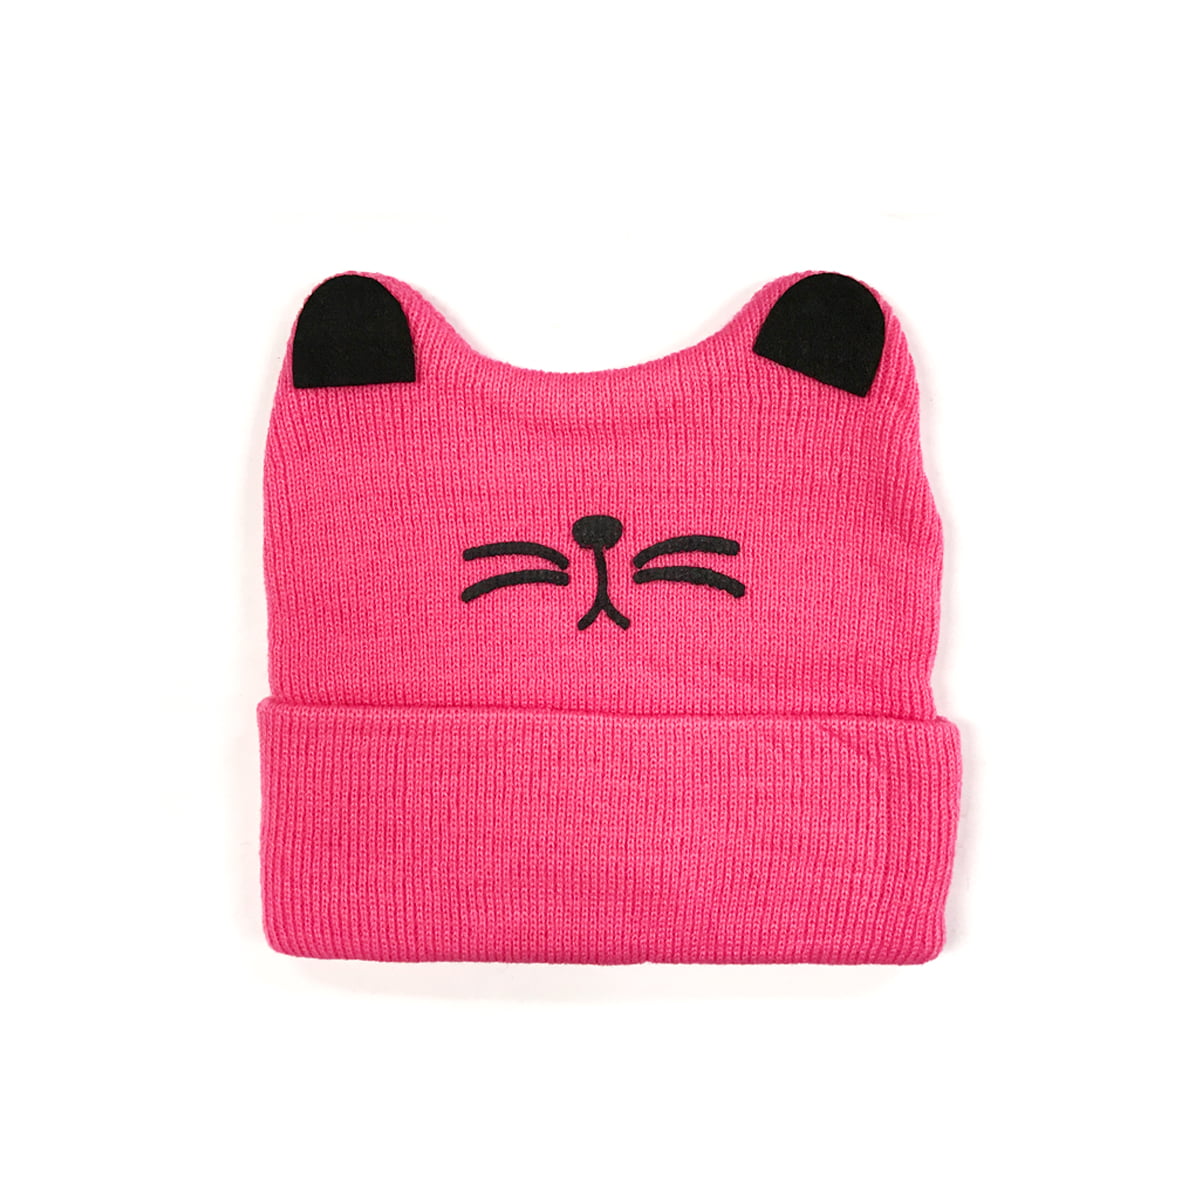 Pac-Man Smile Unisex Children Warm Cute Winter Knit Hat Girls Boys Beanie Skull Cap 